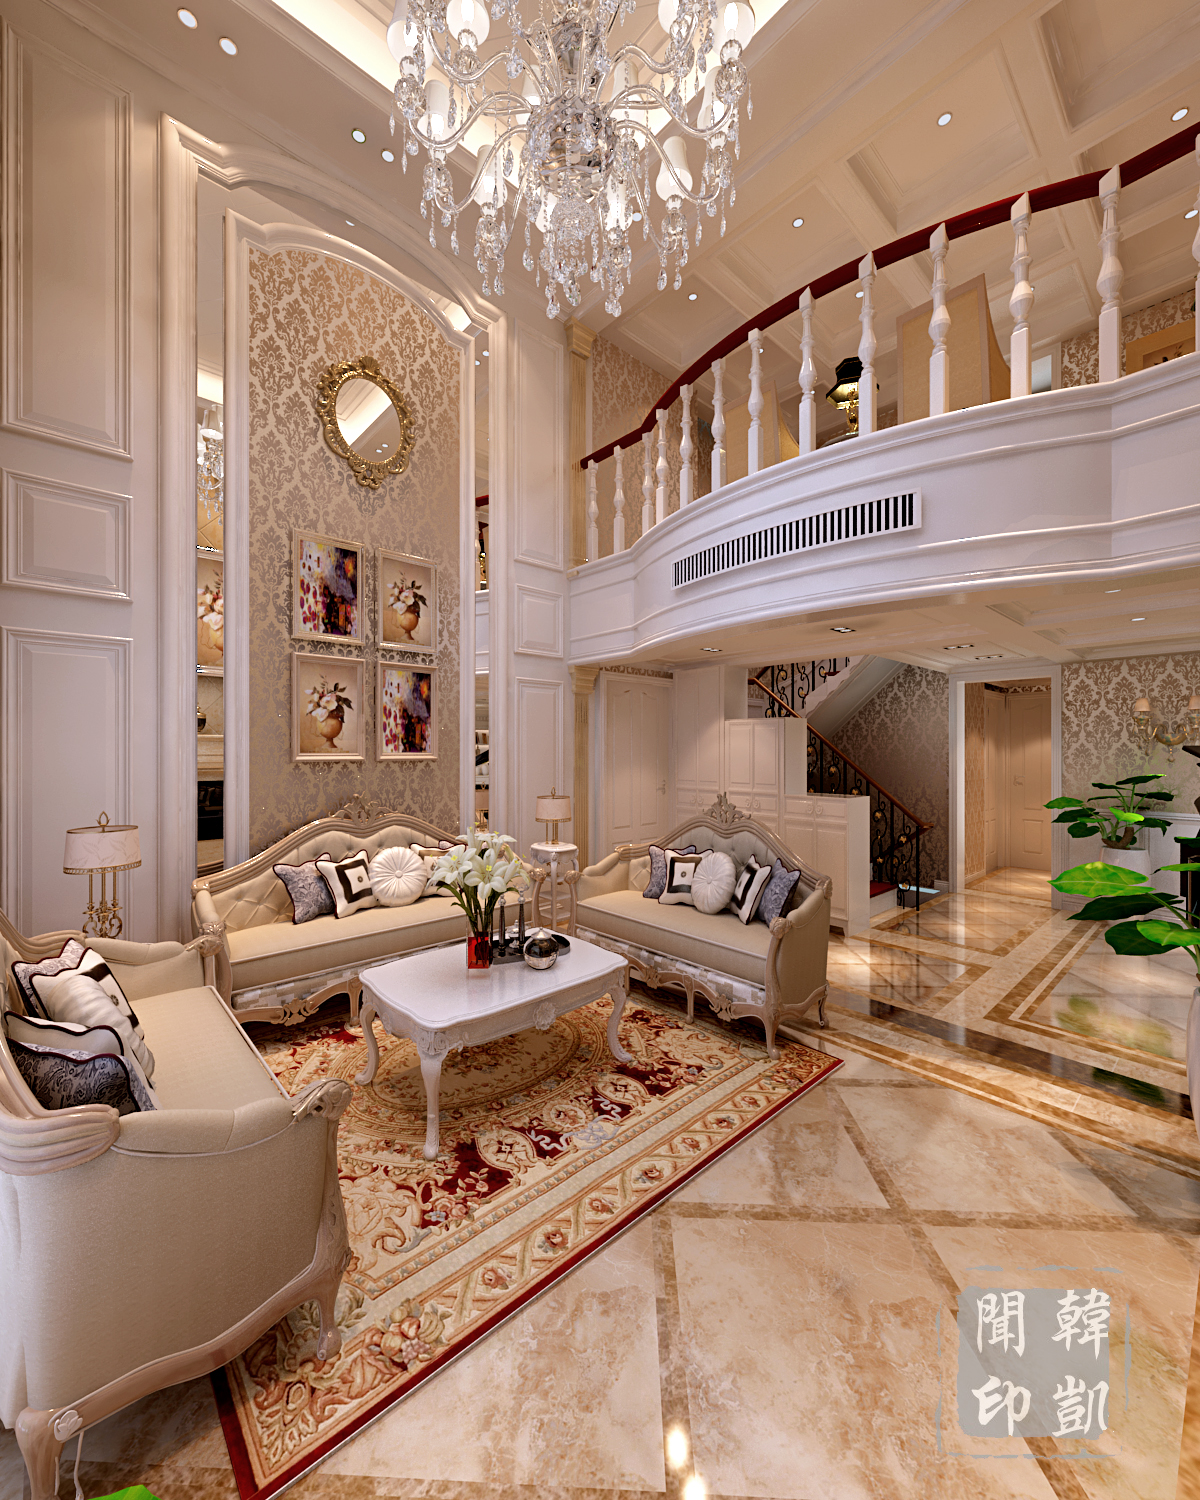 欧式 新古典 别墅 奢华 优雅 复式 挑高空间 客厅图片来自东易力天-韩凯闻在新古典-阐述欧式的优雅空间的分享